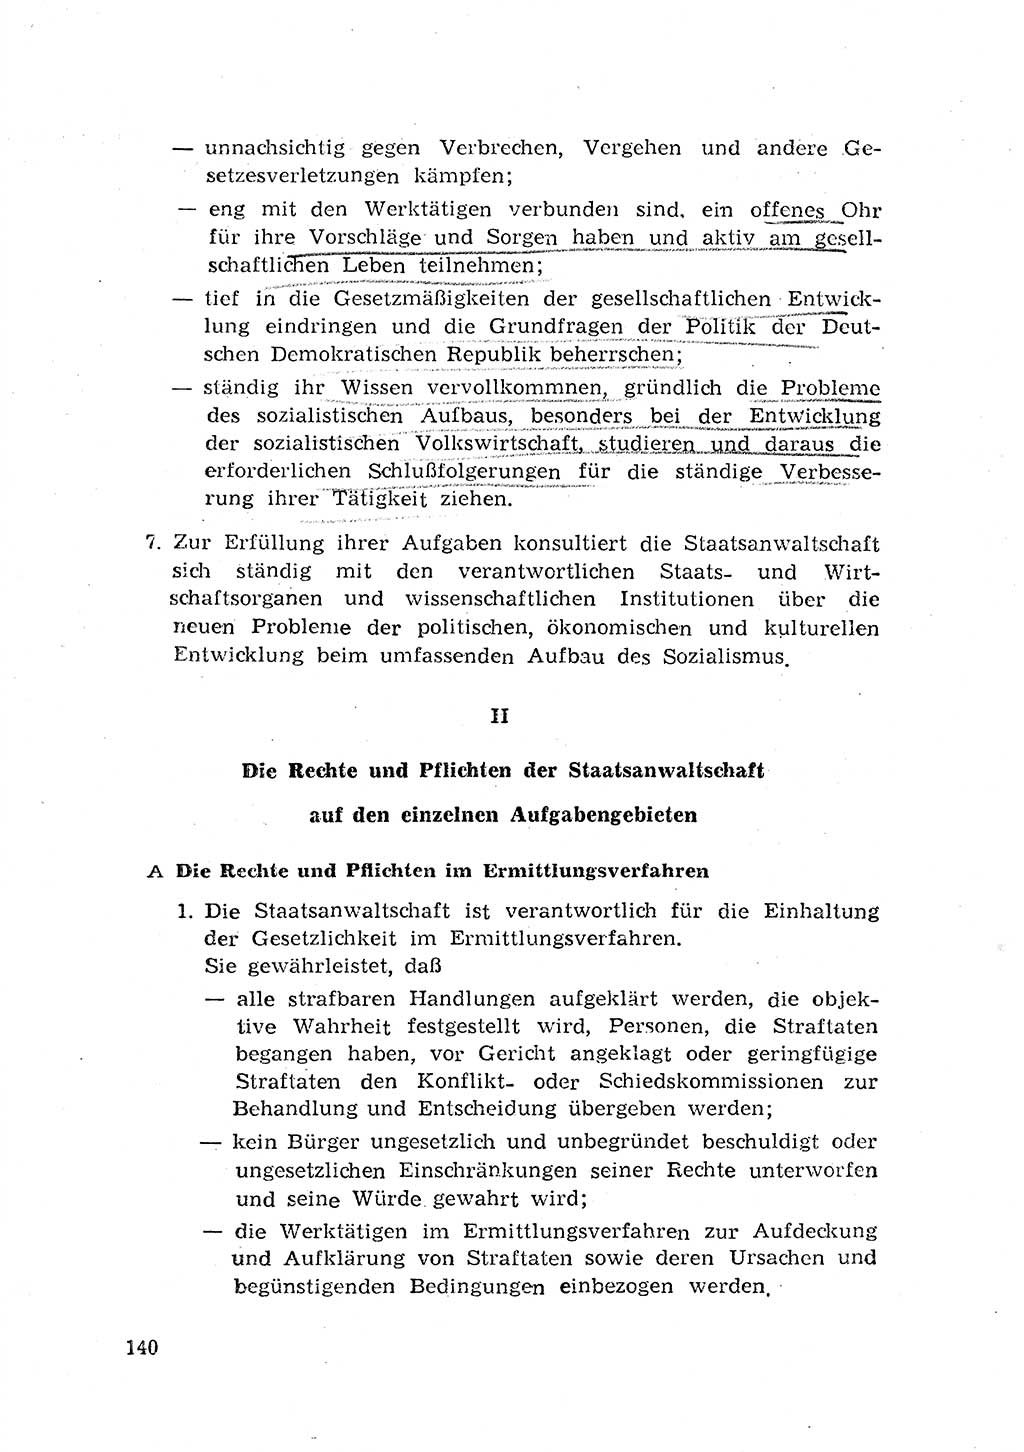 Rechtspflegeerlaß [Deutsche Demokratische Republik (DDR)] 1963, Seite 140 (R.-Pfl.-Erl. DDR 1963, S. 140)